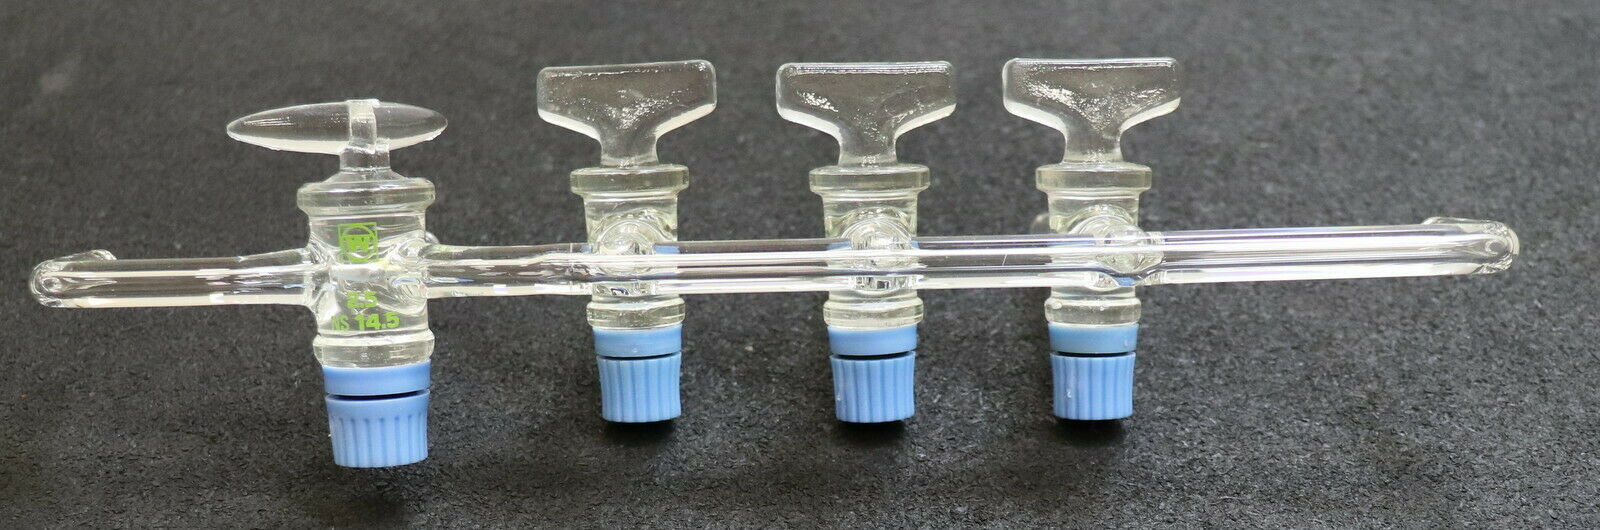 WINZER 4-fach Verteiler fürs Labor mit 4 Glashähnen mit Feststellung Rohr-Ø 8mm